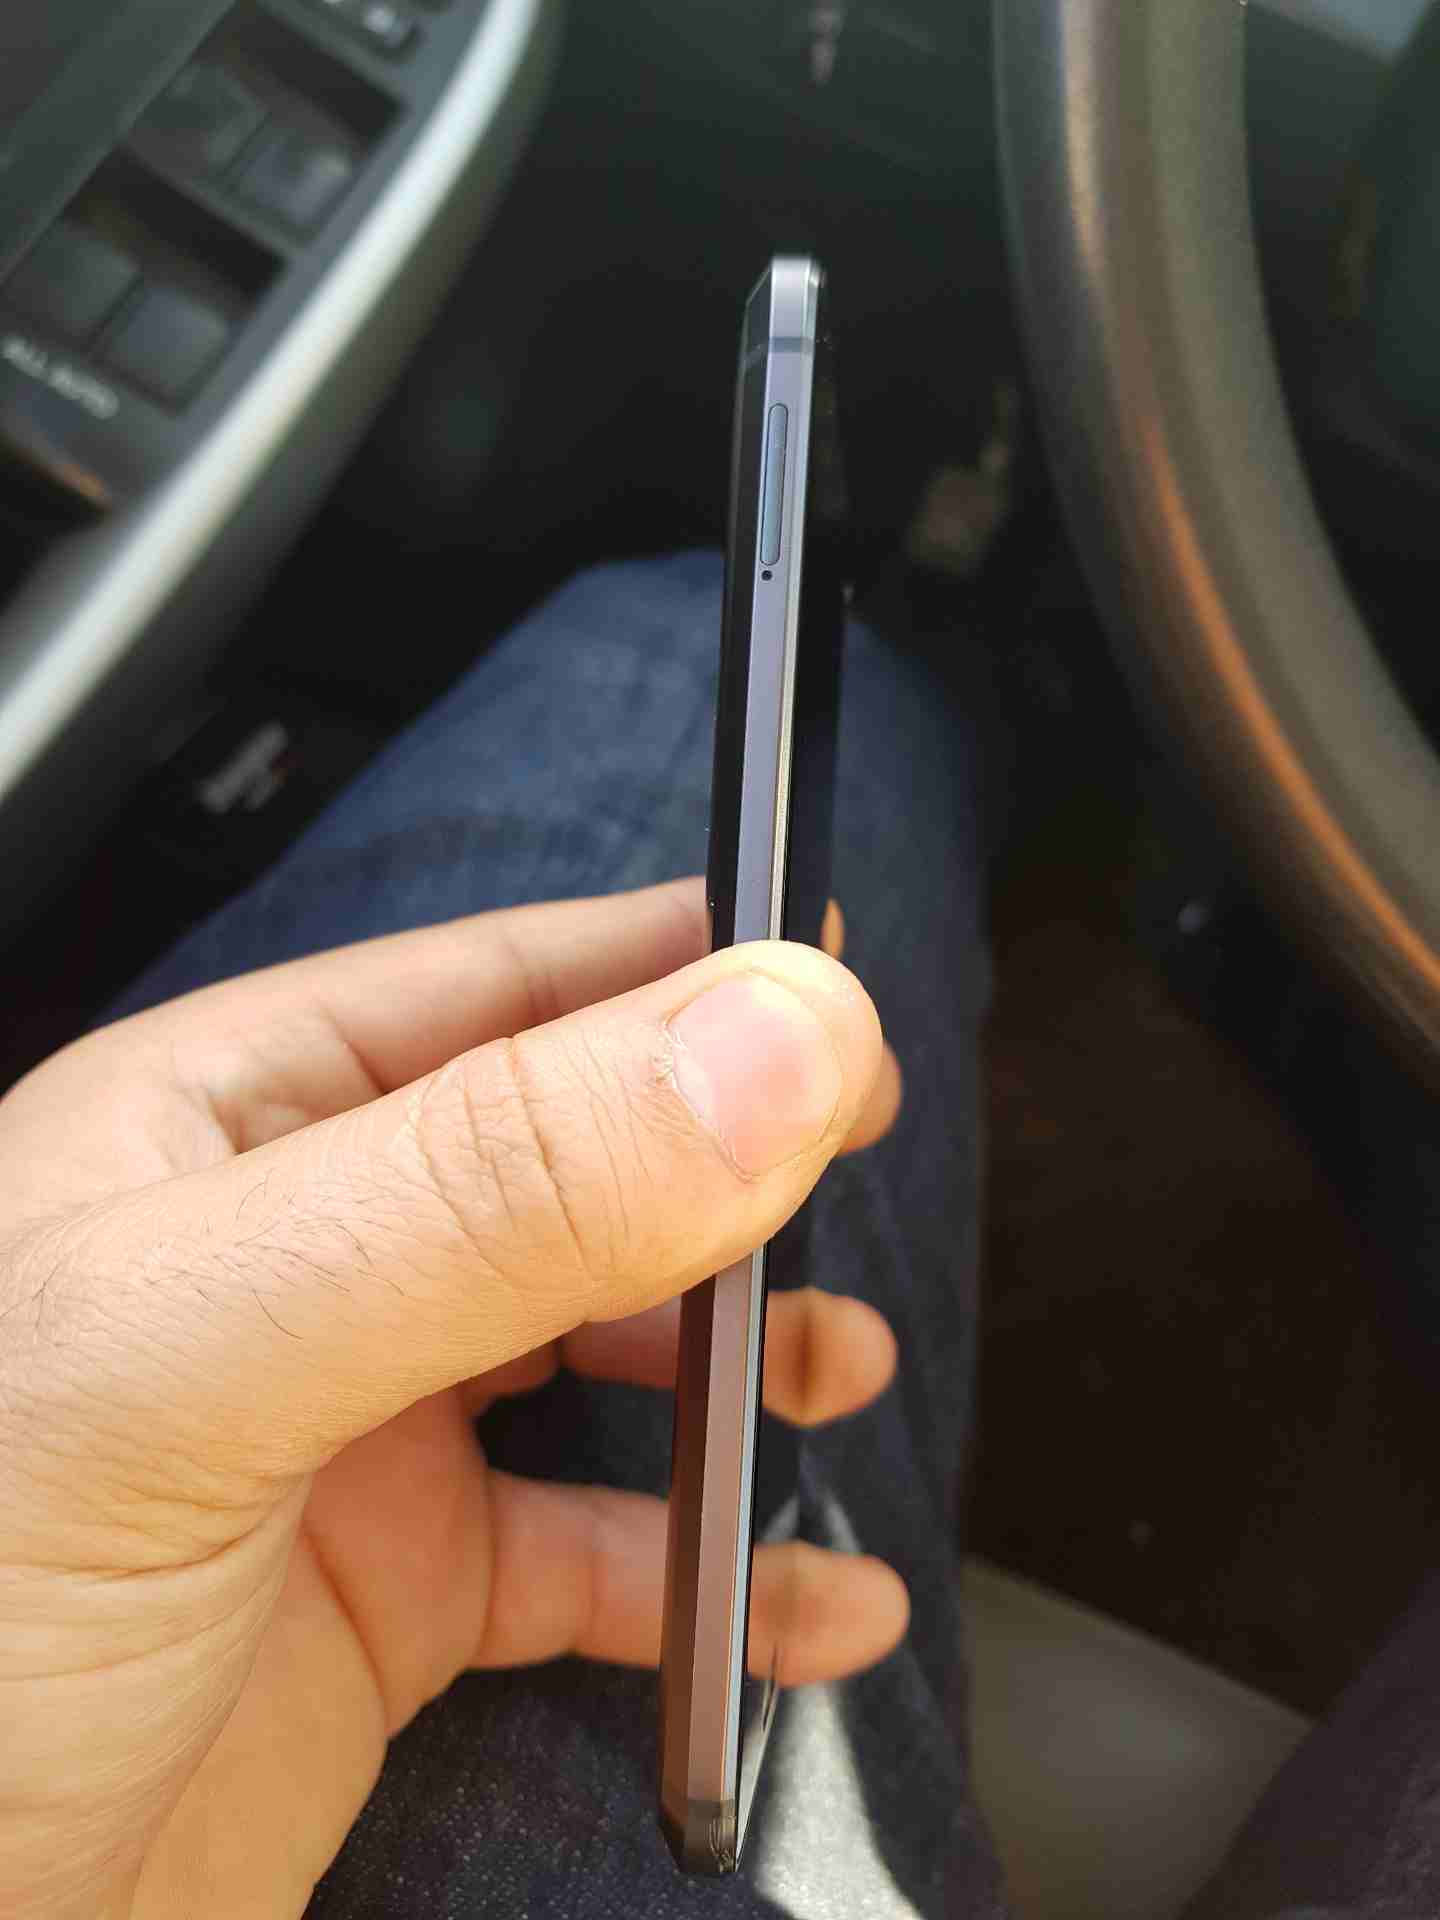 ساموسنج S9 مستعمل 32 جيجا اصلى 100 فى 100-  htc m10 لا تنسَ أنك شاهدت...